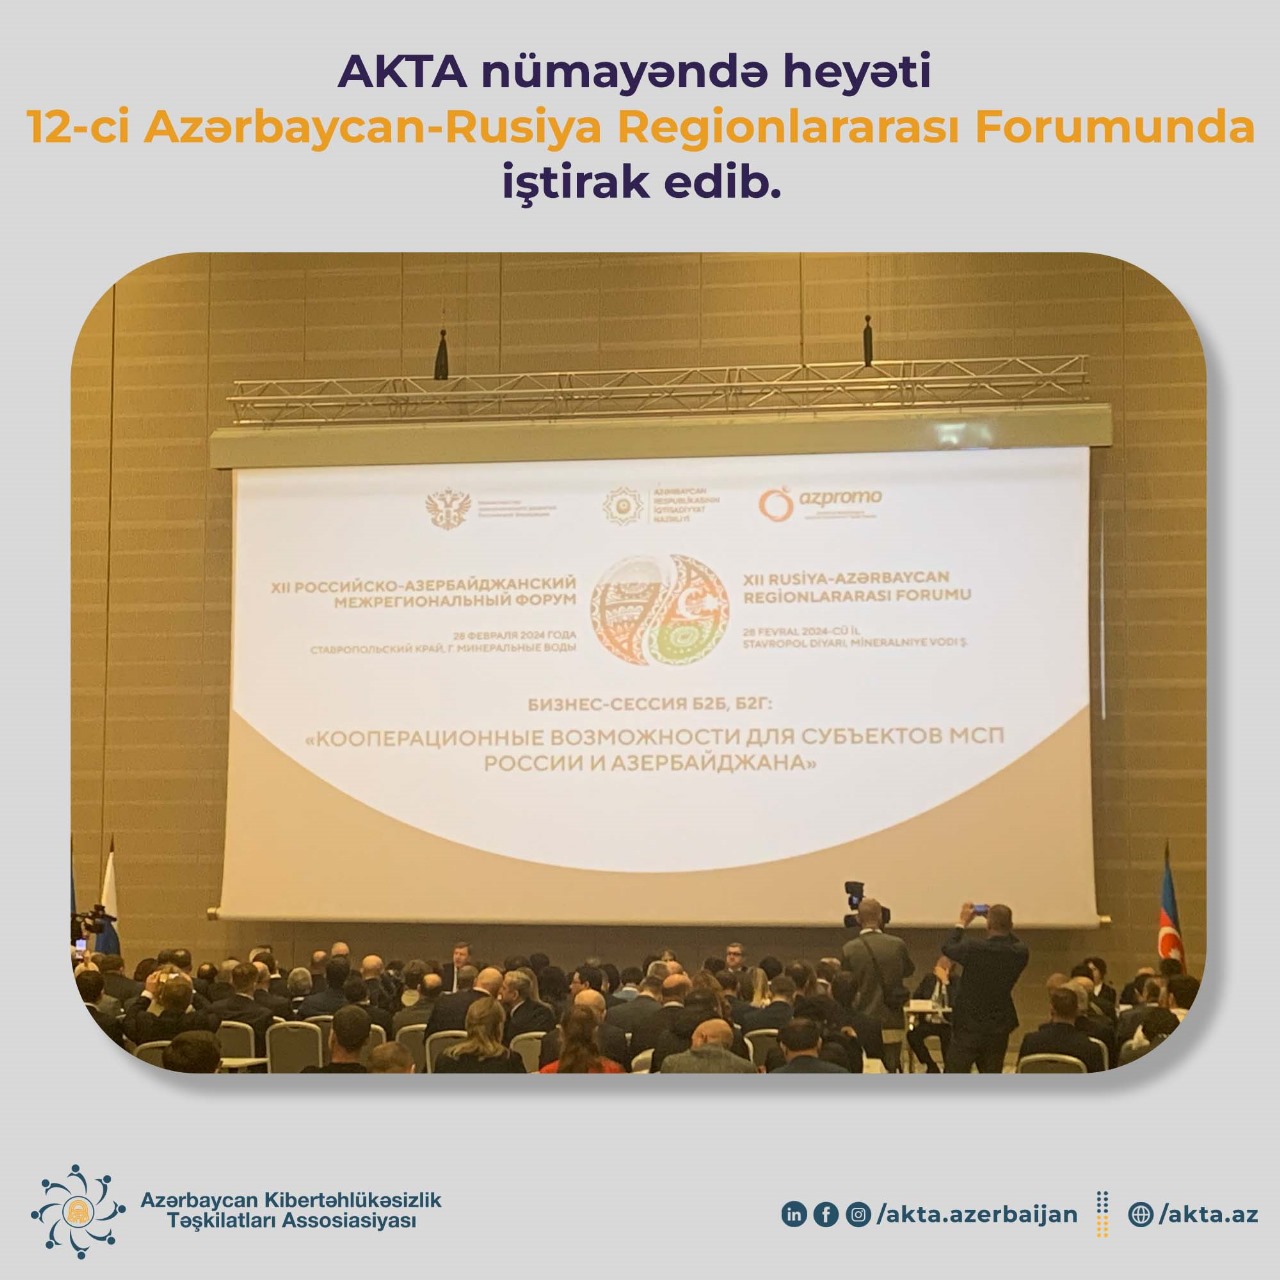 AKTA nümayəndə heyəti 12-ci Azərbaycan-Rusiya Regionlararası Forumunda iştirak edib